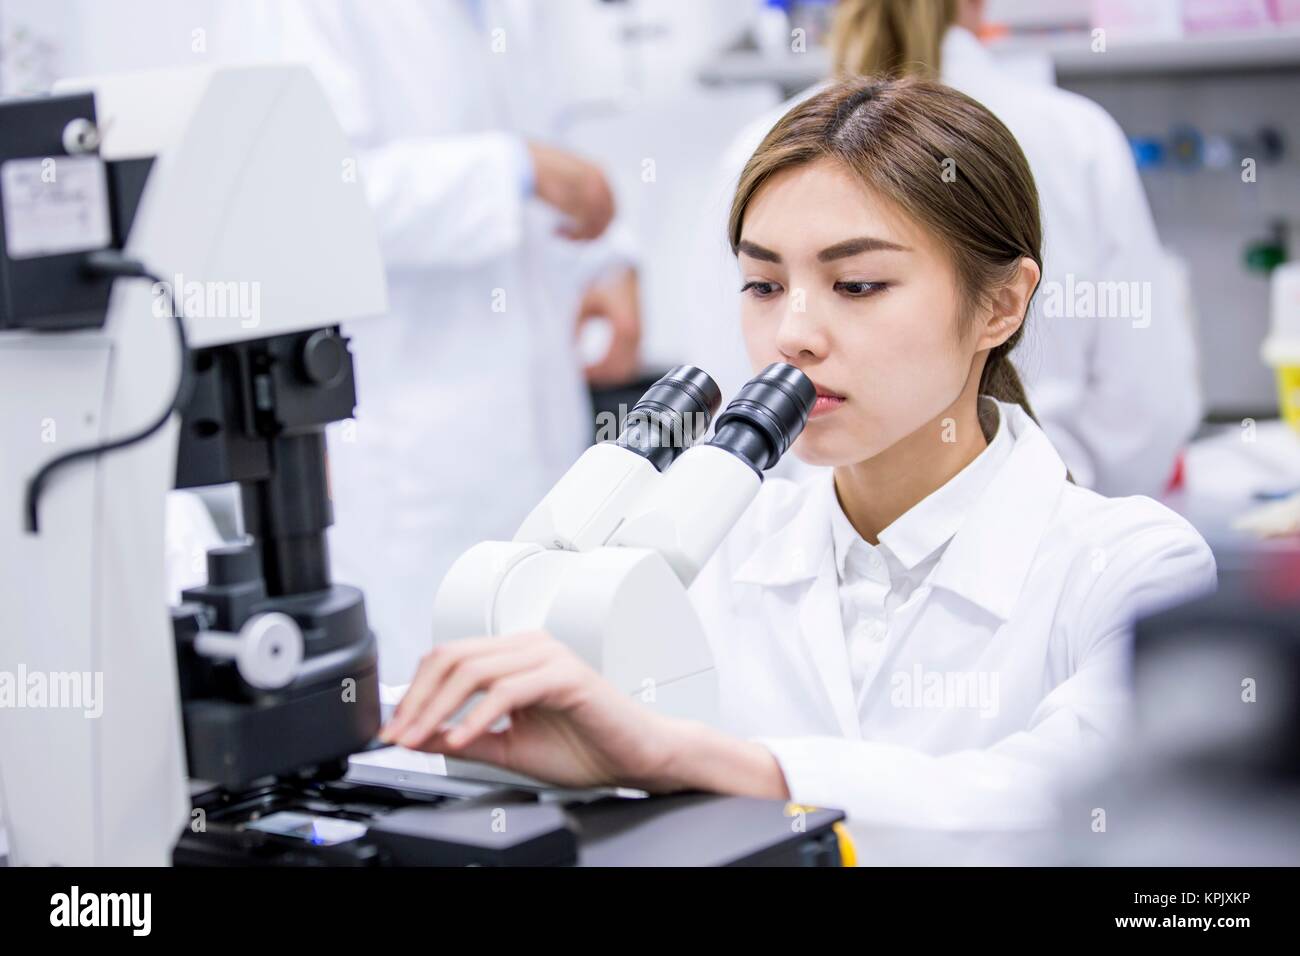 Female scientist using microscope in laboratory. Stock Photo